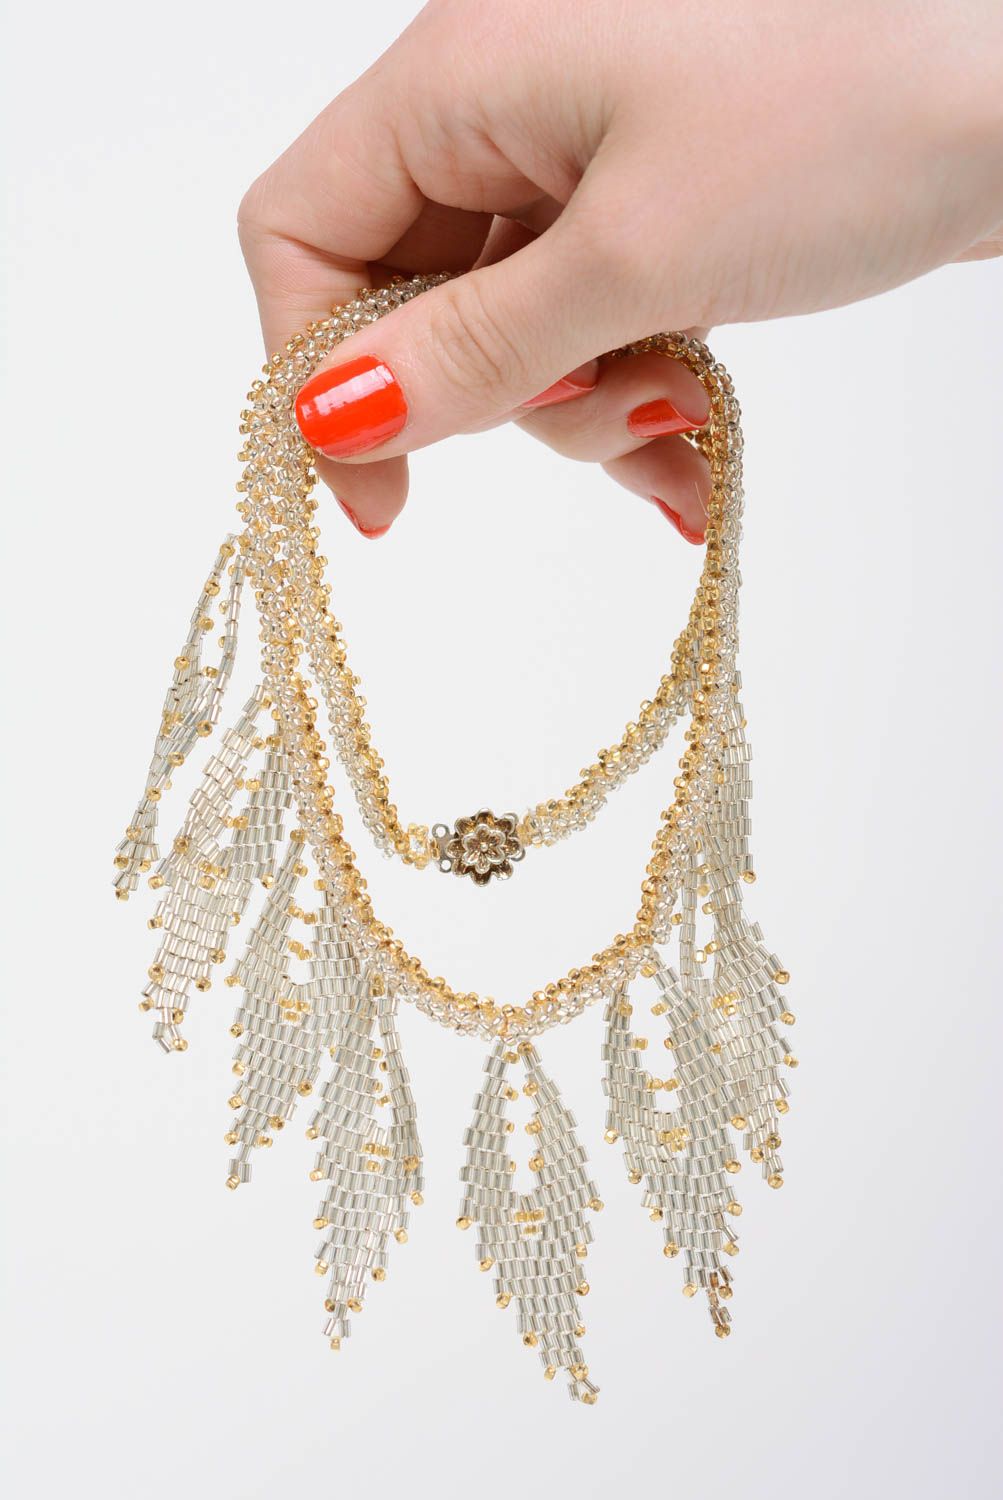 Ожерелье из бисера золотистого цвета нежное красивое ручной работы плетеное фото 4